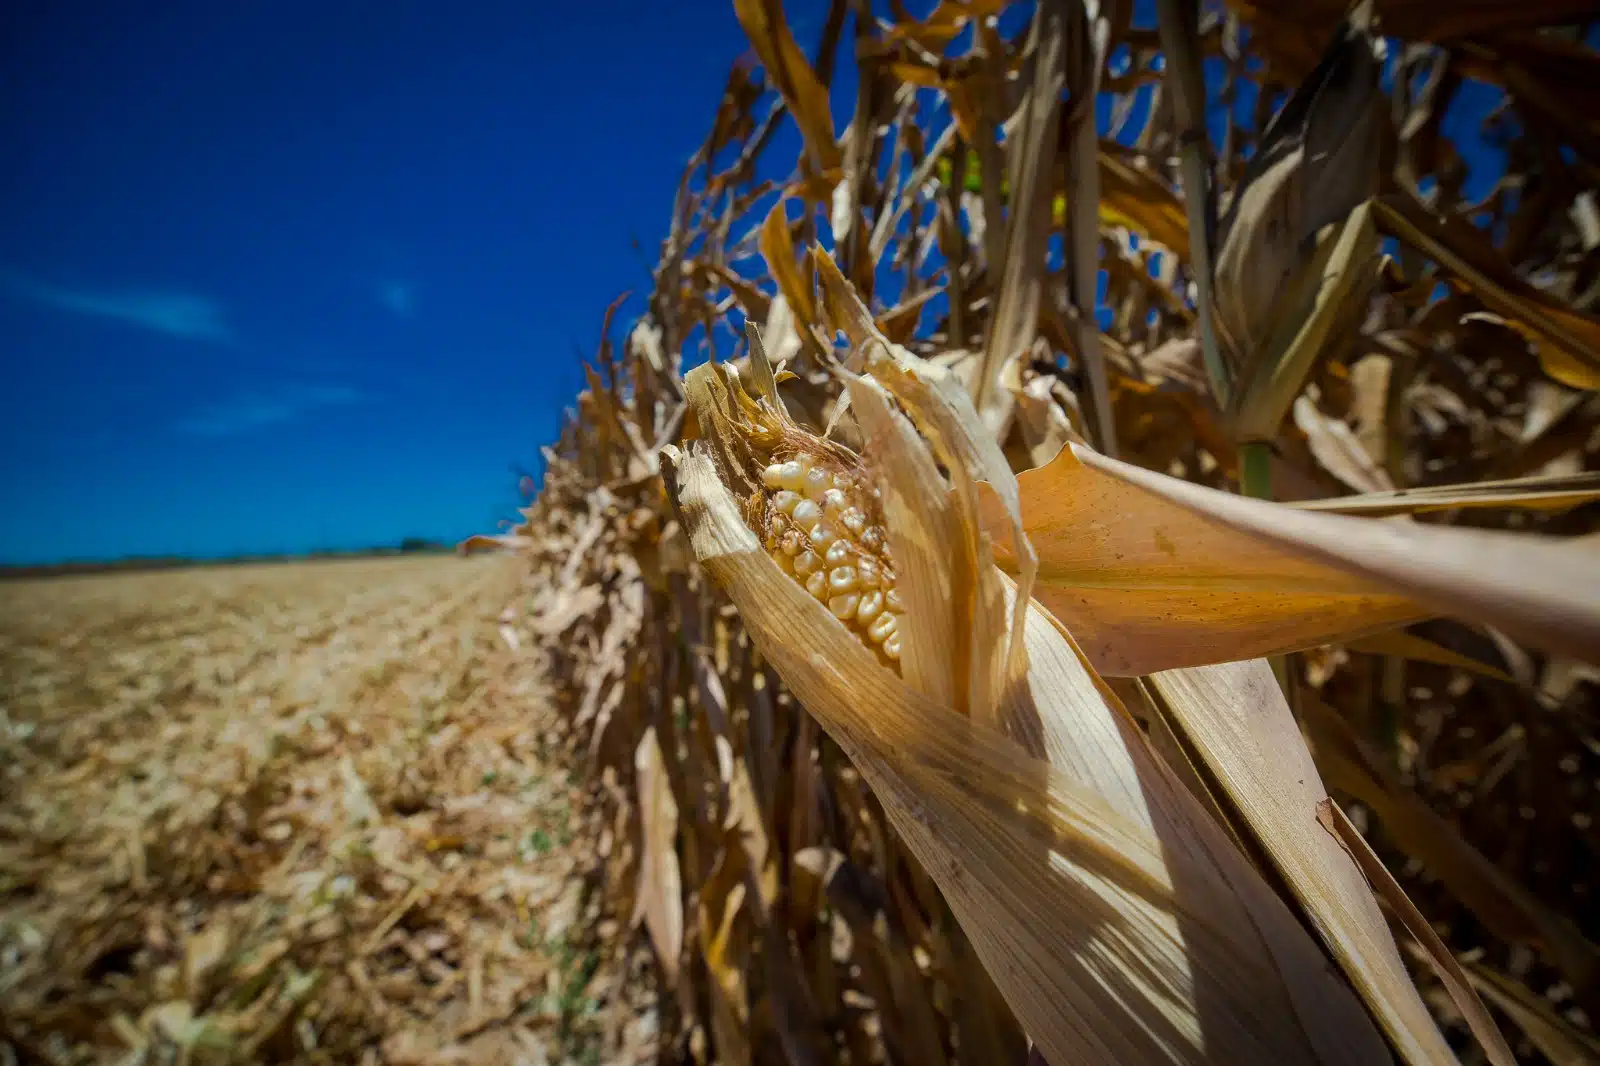 Productores de maíz demandan políticas compensatorias urgentes para impulsar la comercialización